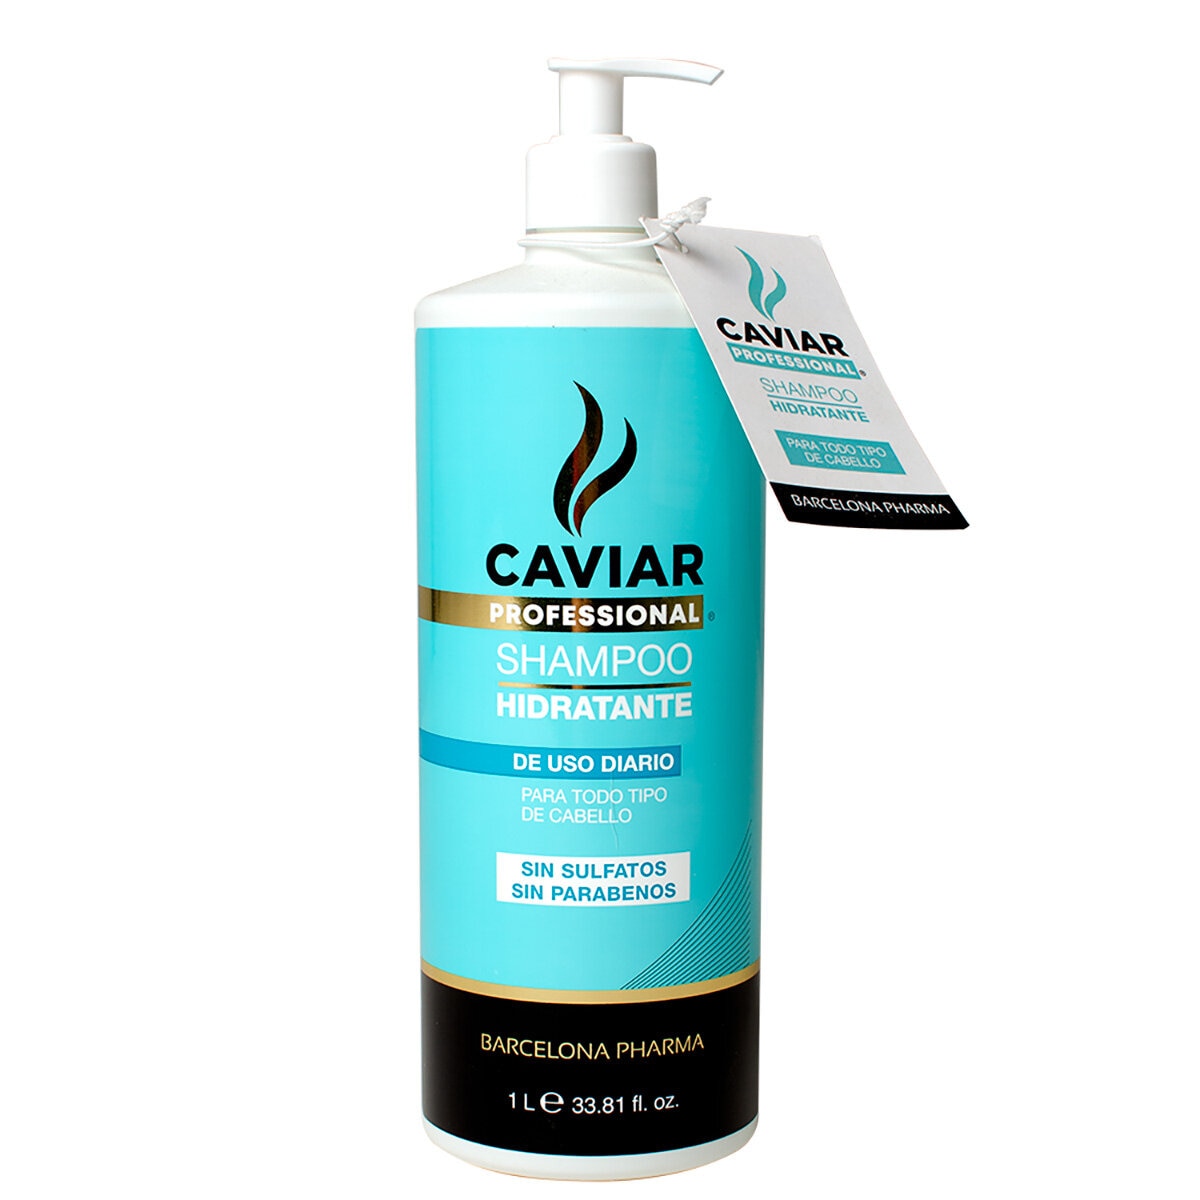 Caviar Professional Shampo 1 L